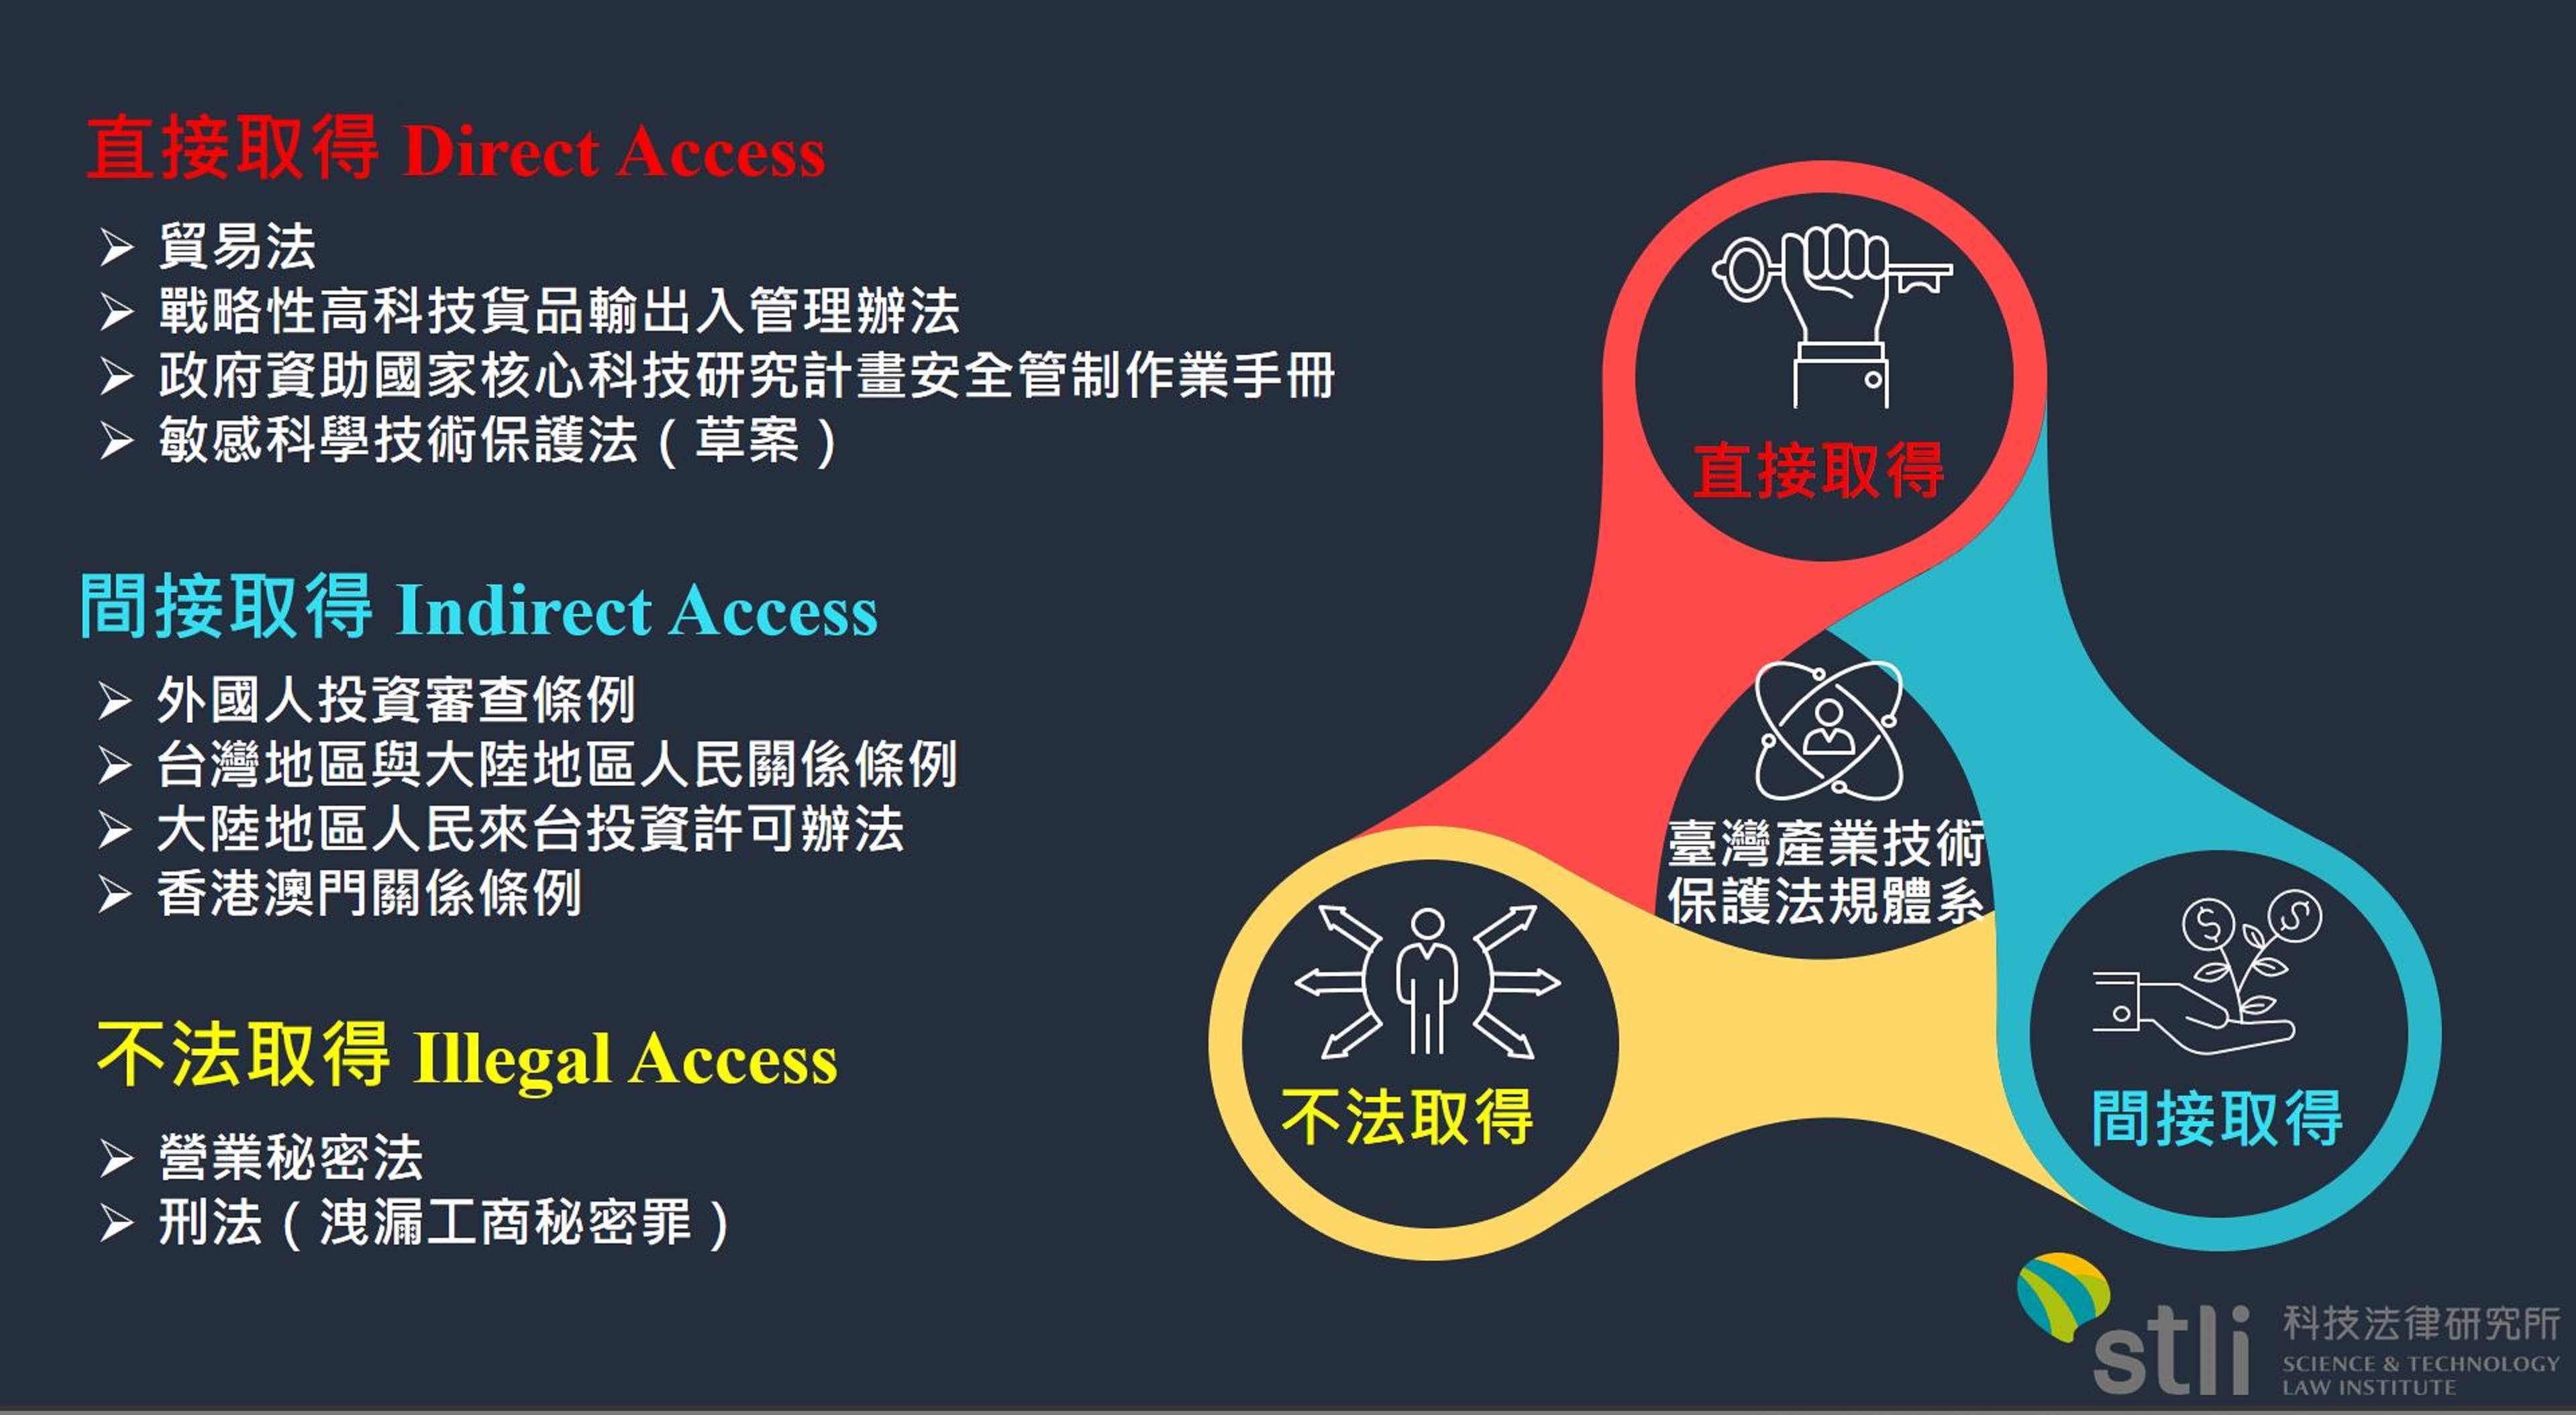 資策會科技法律研究所表示，臺灣產業技術保護分為直接取得、間接取得、不法取得等三種型態